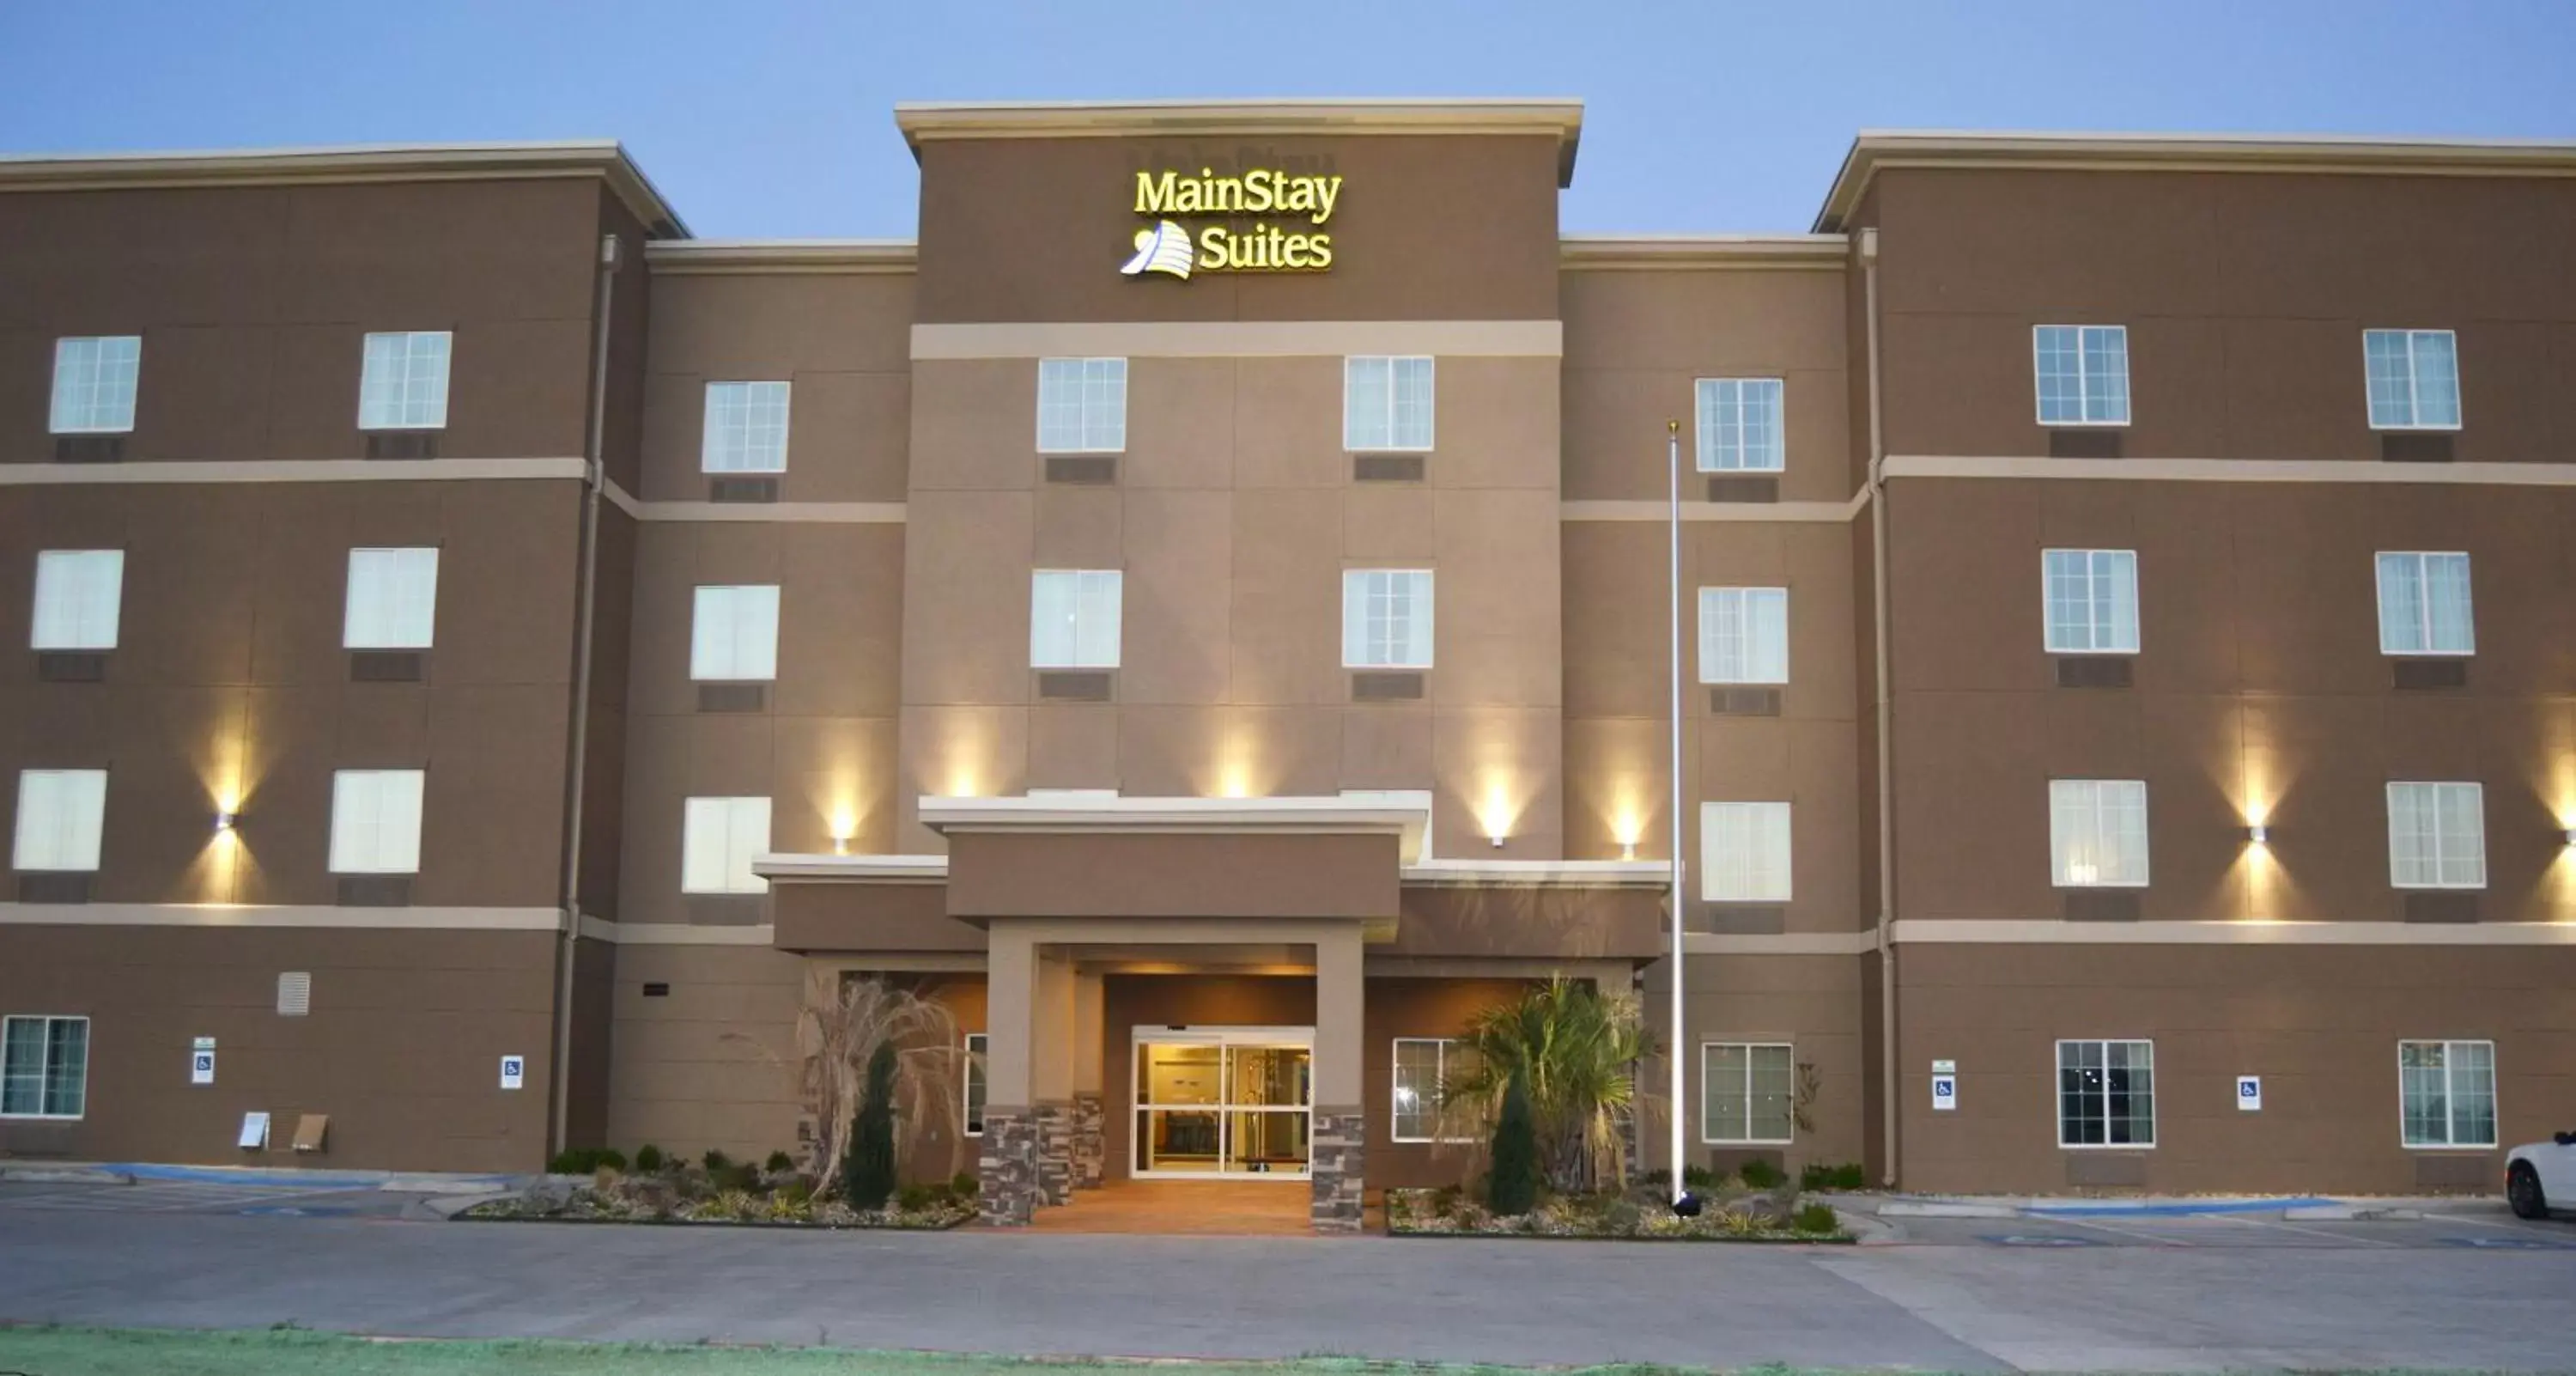 Facade/entrance in MainStay Suites Midland